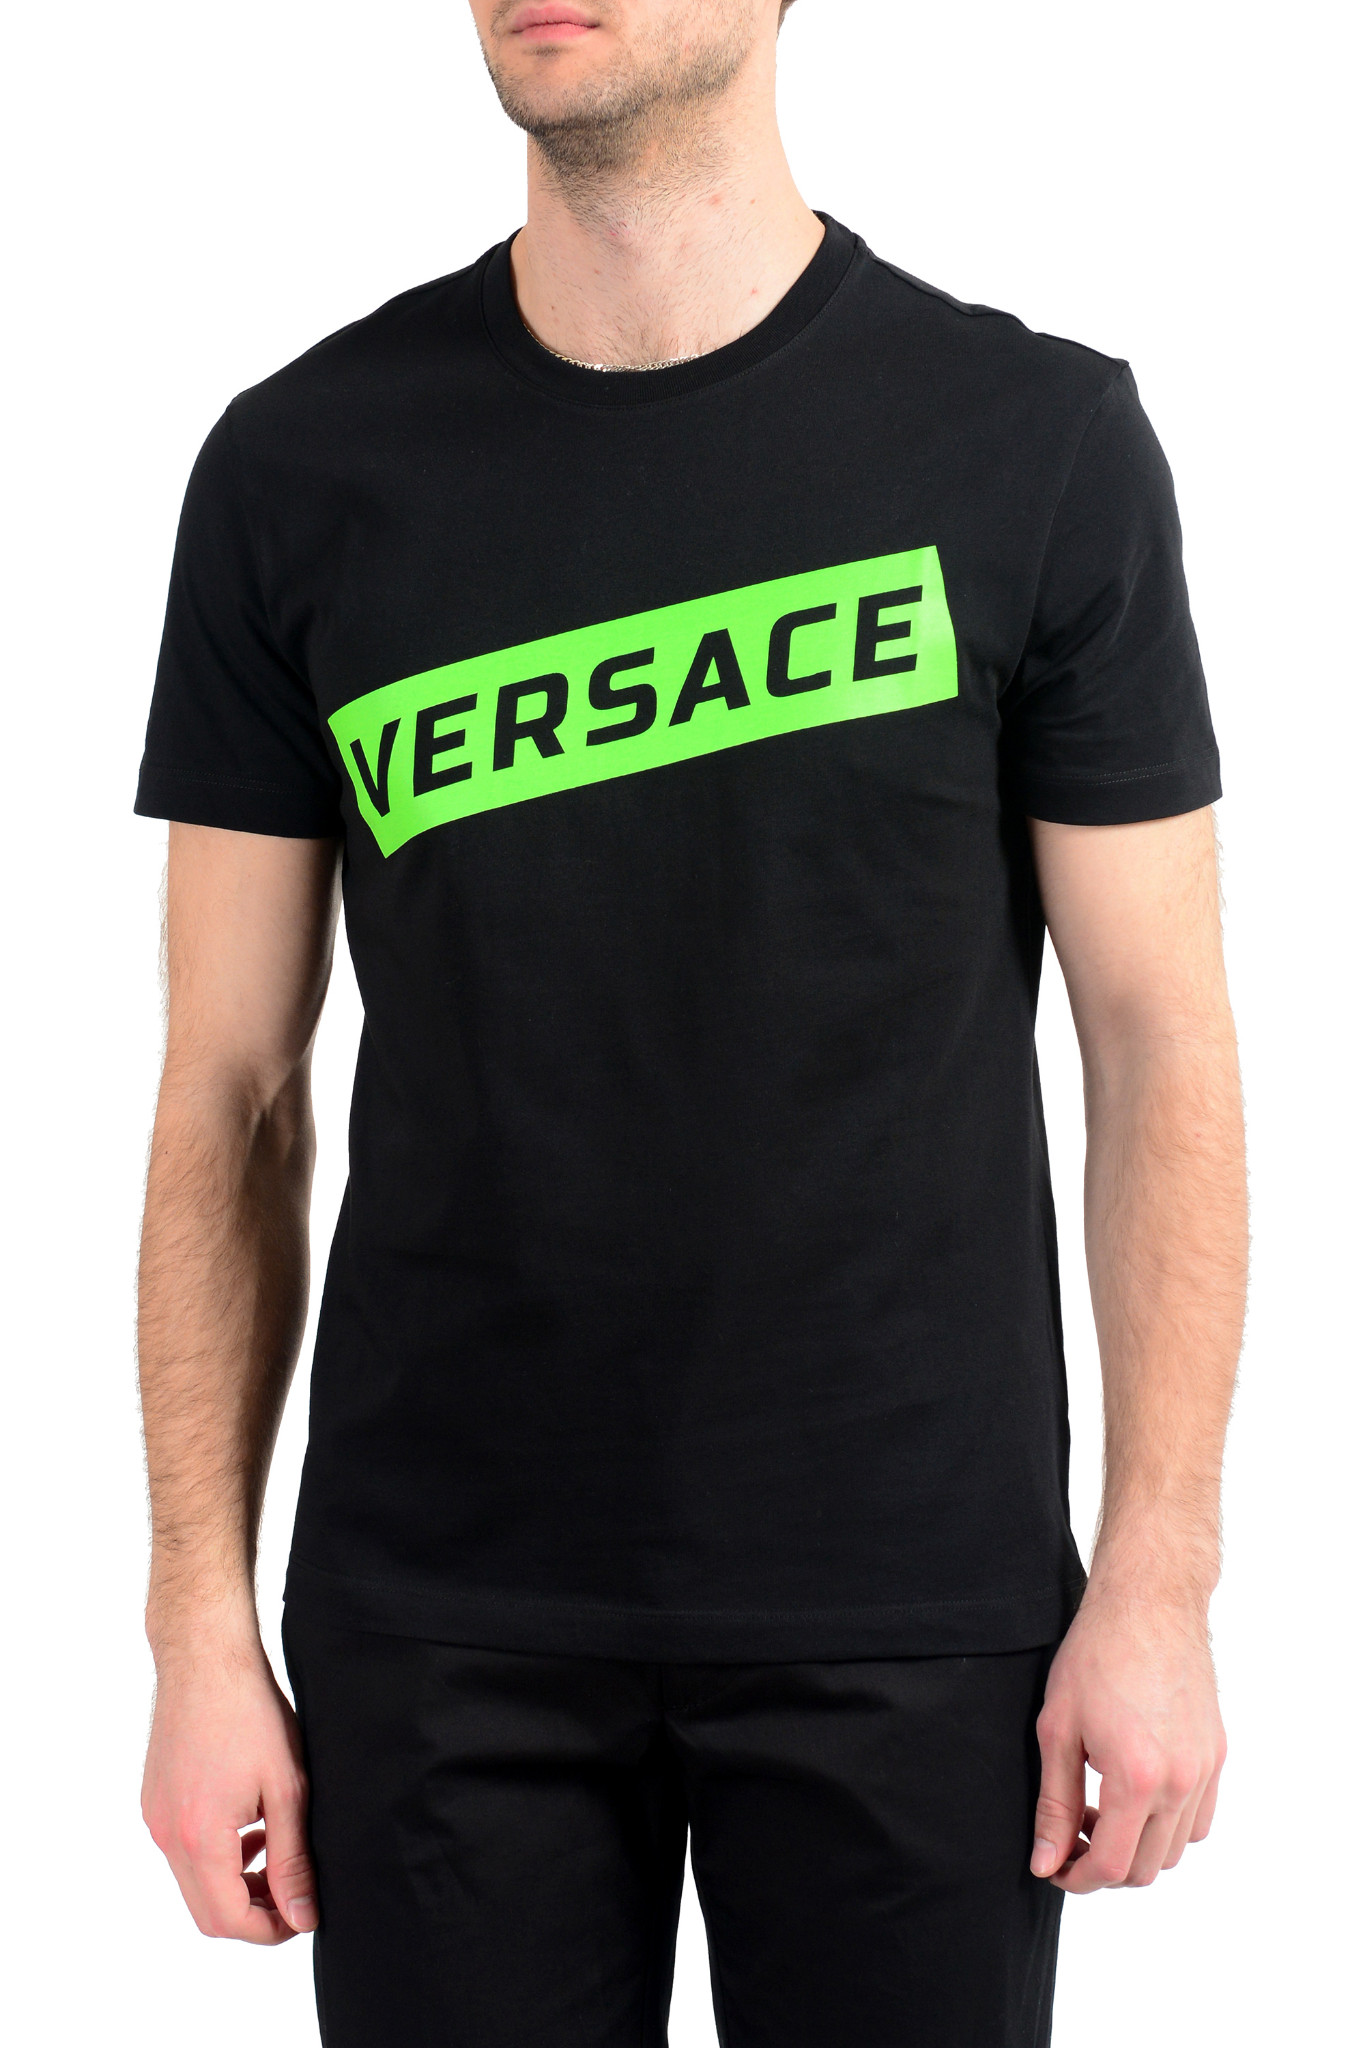 green versace t shirt